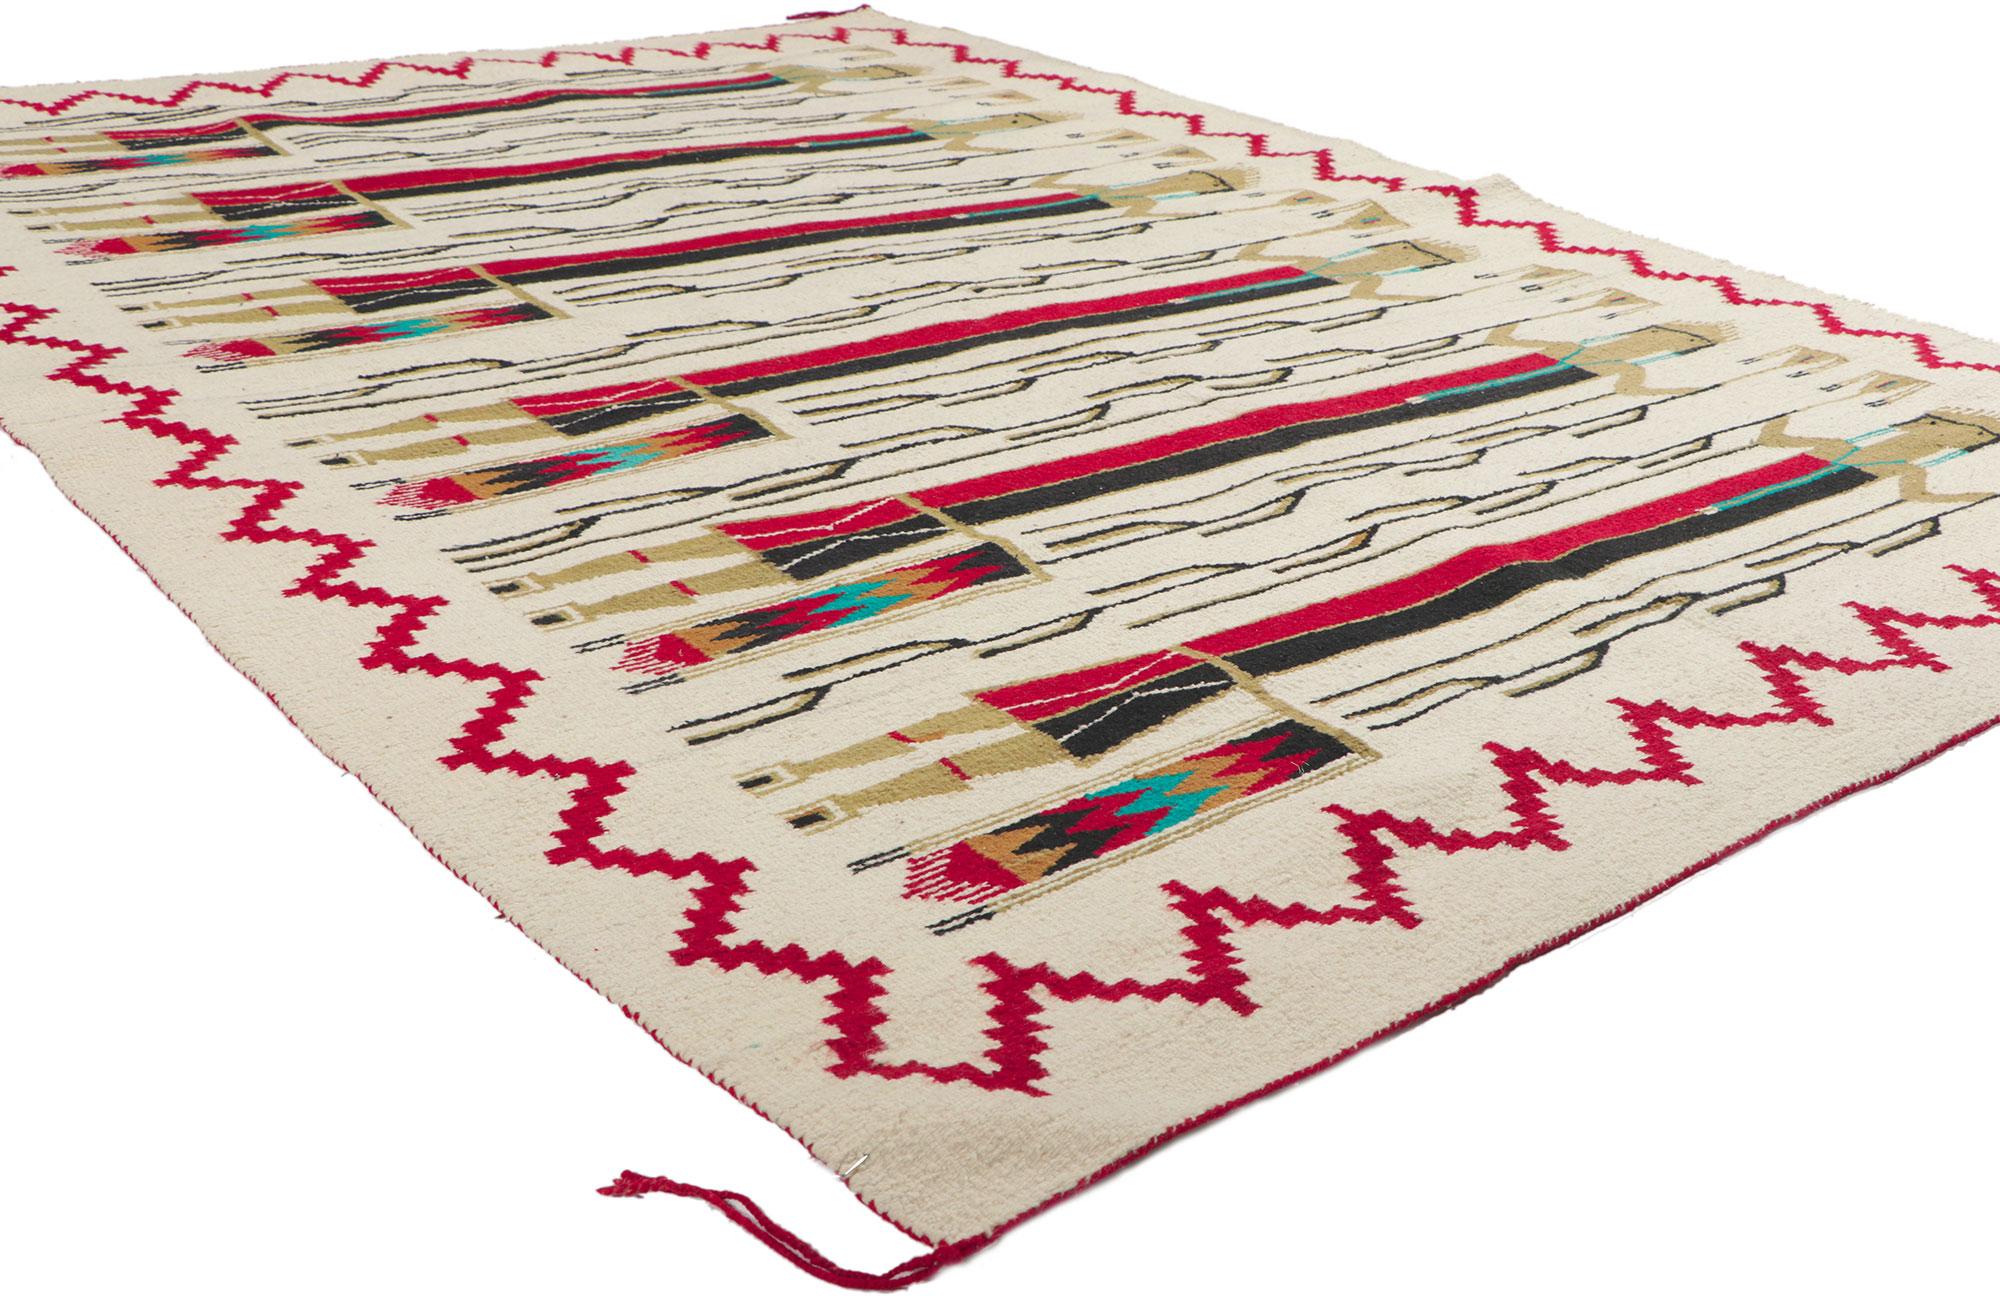 78502 Tapis Vintage By Navajo, 05'03 x 07'03. Emanant du style du Sud-Ouest avec des détails et une texture incroyables, ce tapis vintage Navajo Yeibichai tissé à la main est une vision captivante de la beauté tissée. Le pictogramme accrocheur de